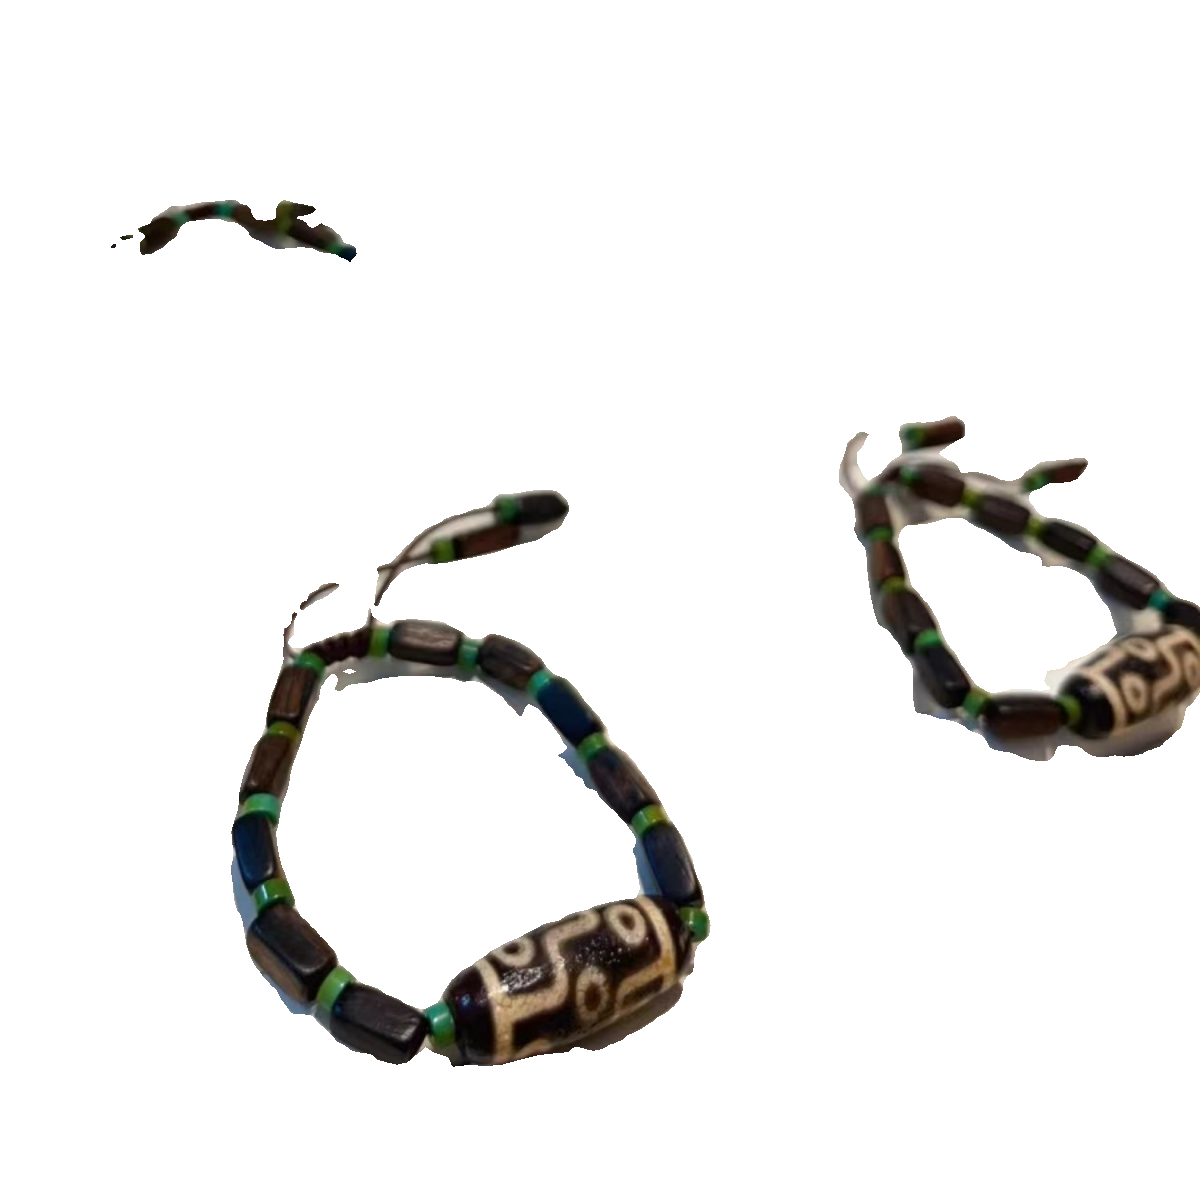 藏传九眼天珠手链搭配天然达拉干沉香韵味独特佩戴效果一流T599-图3